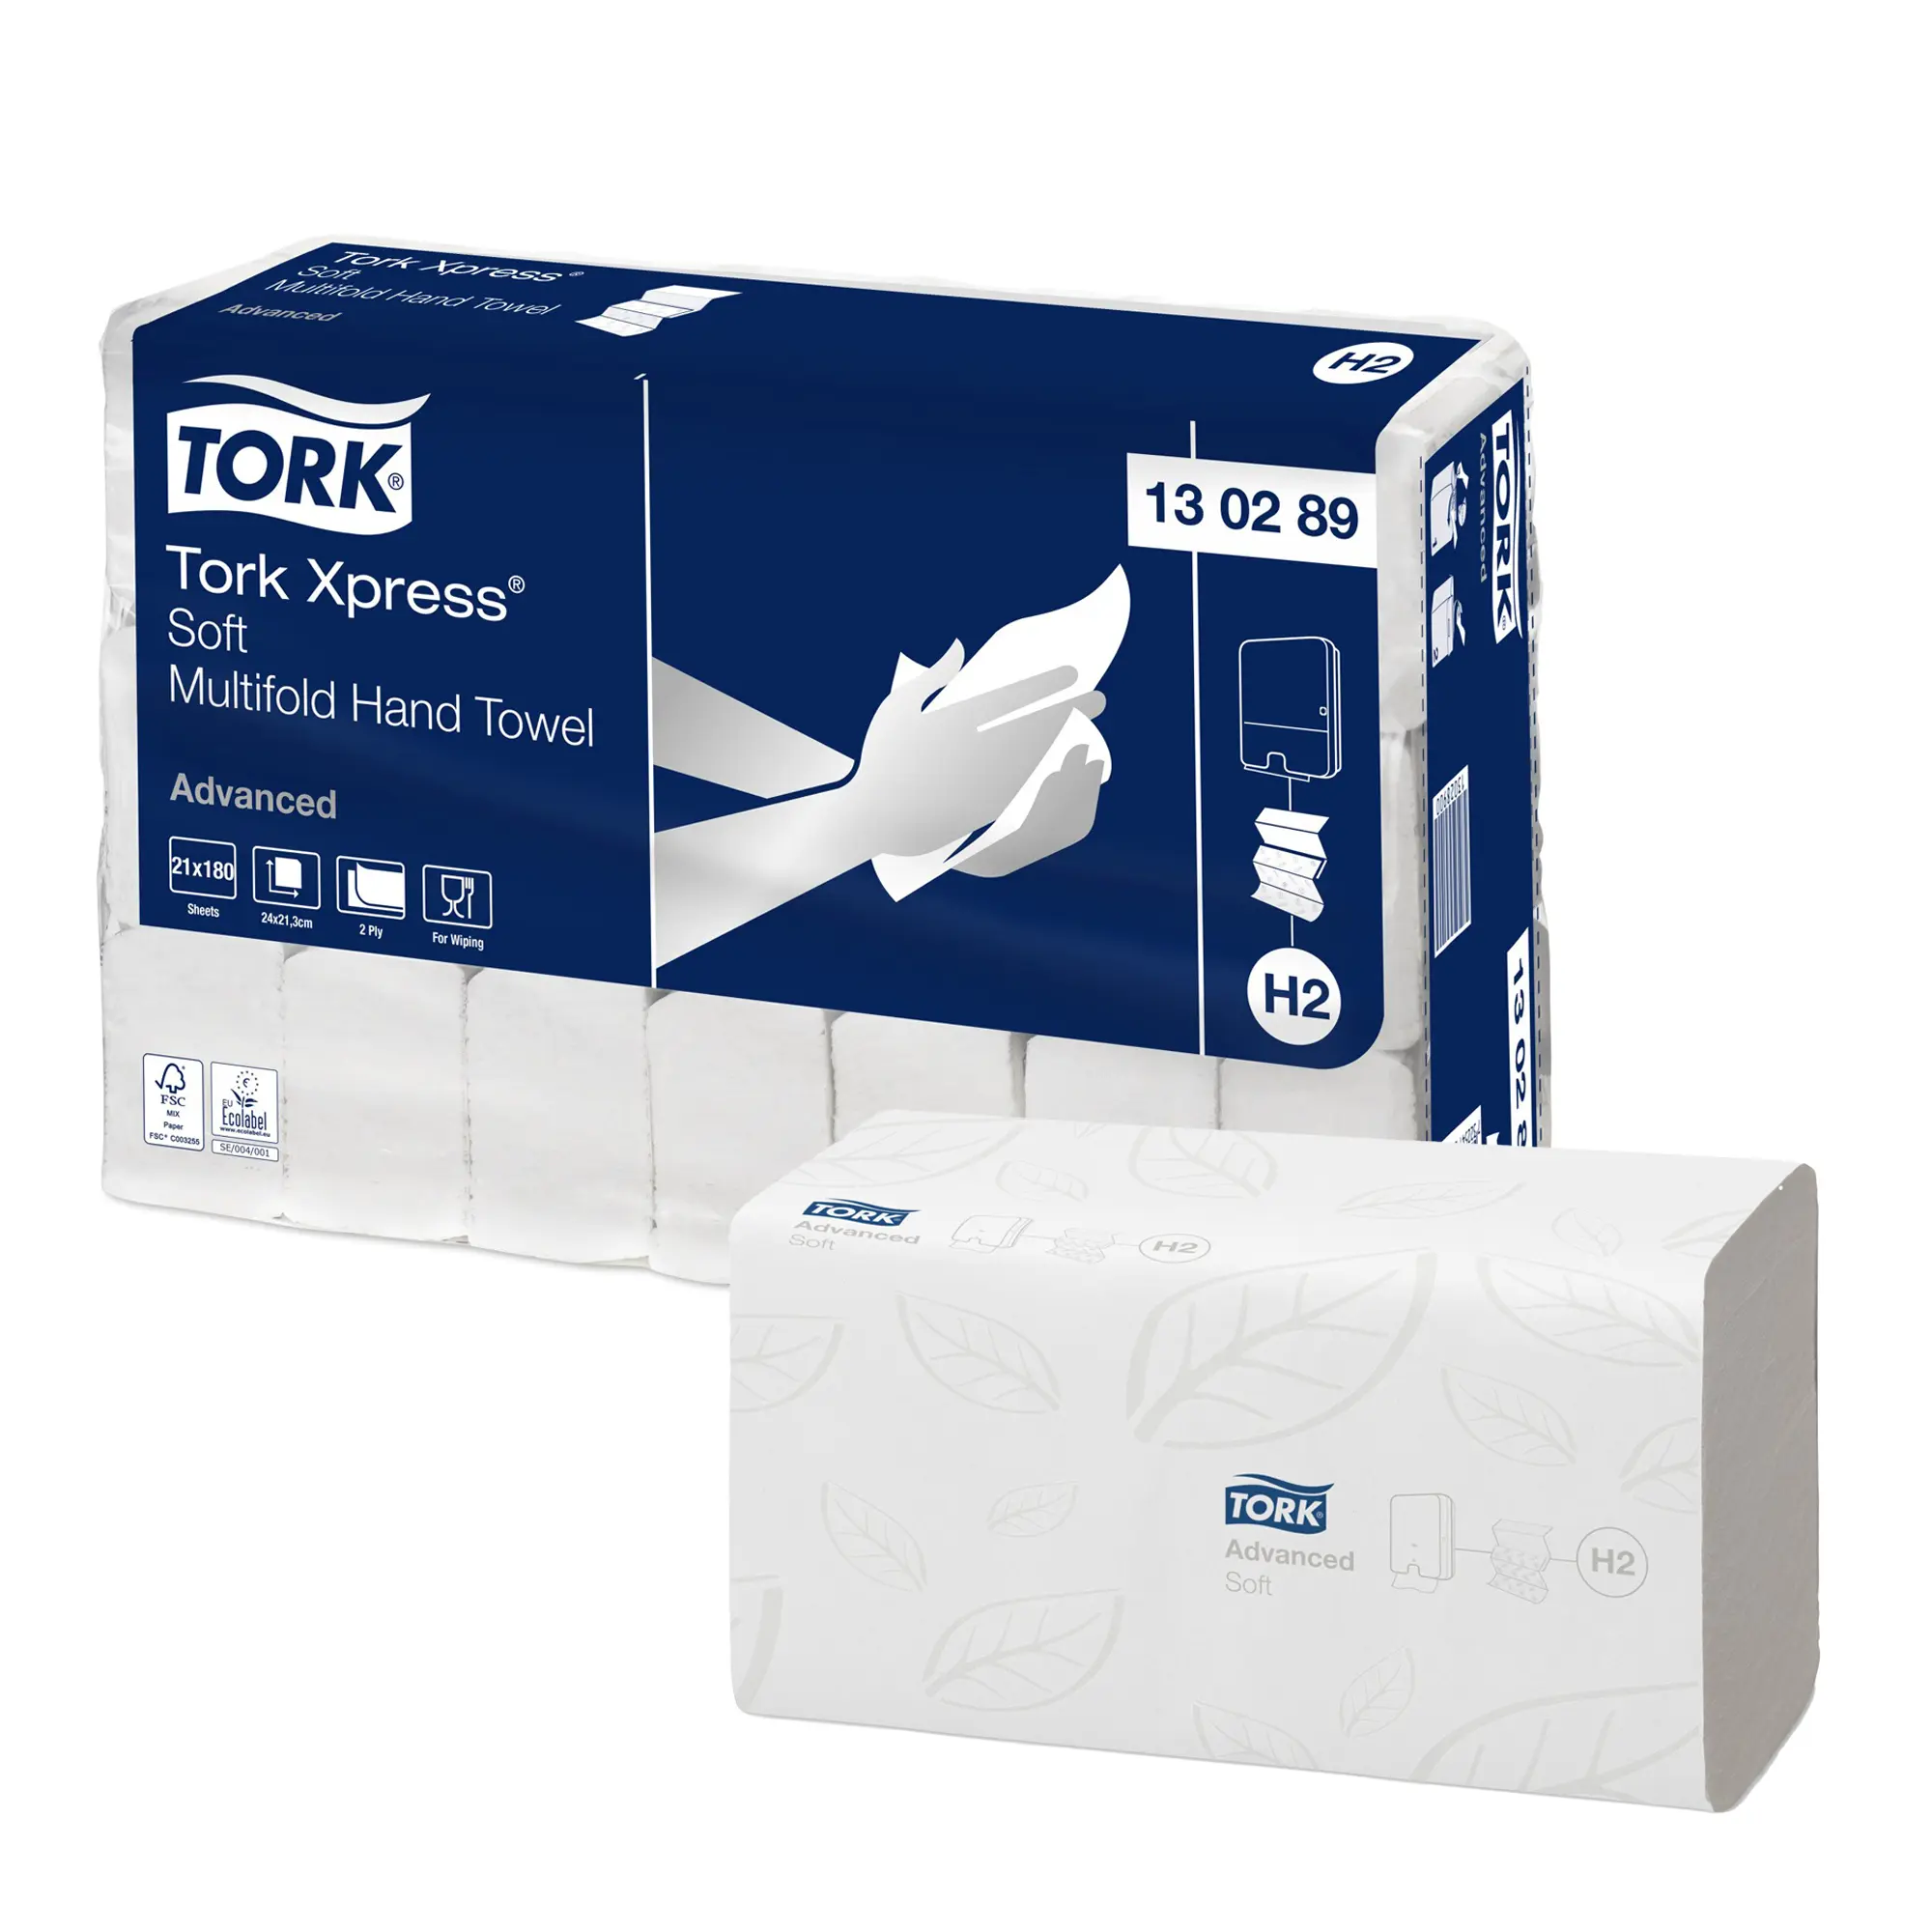 Tork Xpress Advanced weiche Papierhandtücher Multifold Interfold 21,3 x 24 cm, 2-lagig, weiß 